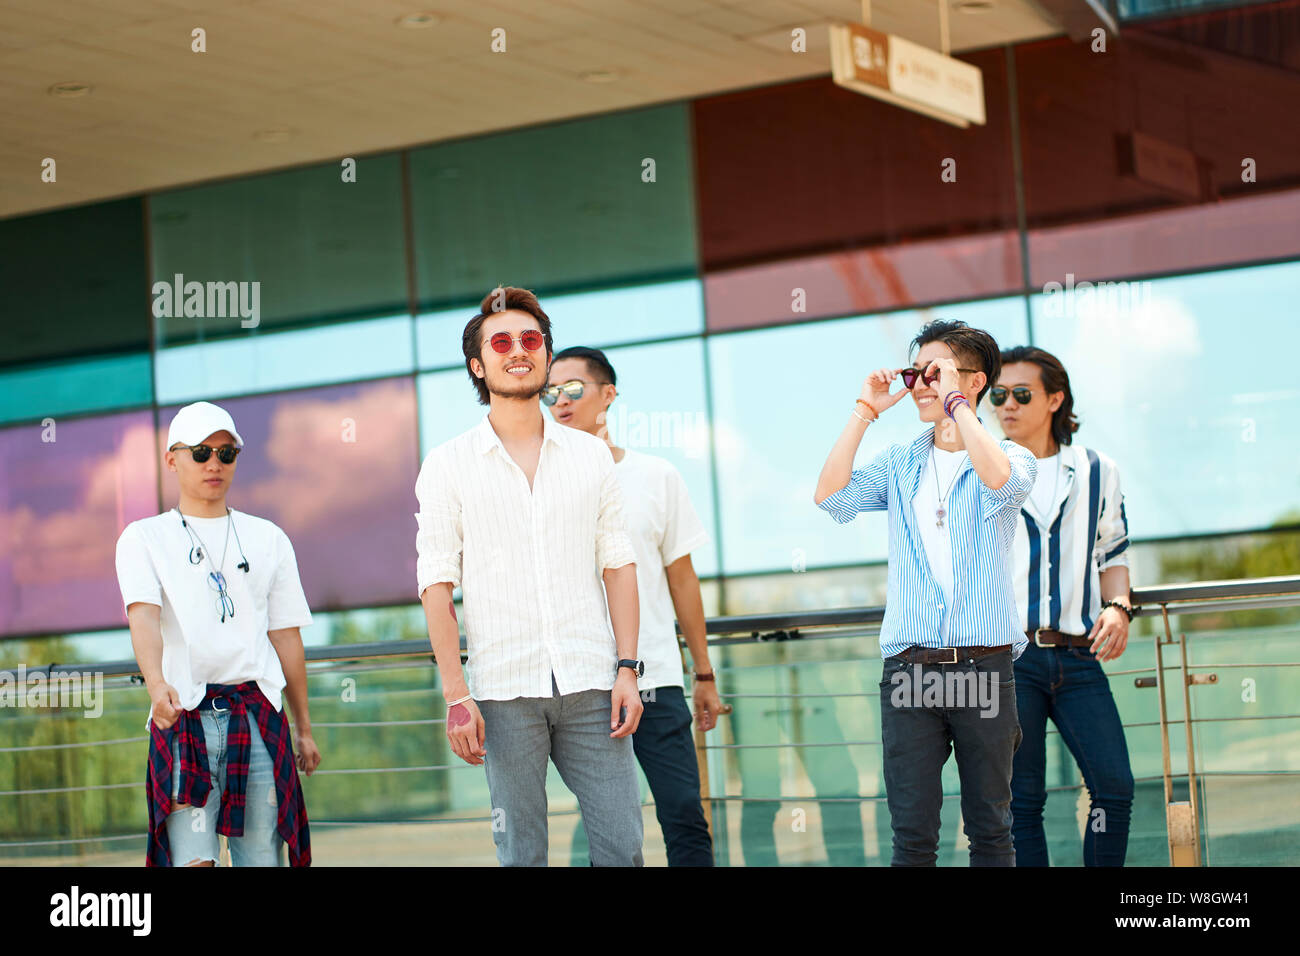 Un groupe de cinq jeunes adultes asiatiques traînant ensemble walking on street Banque D'Images